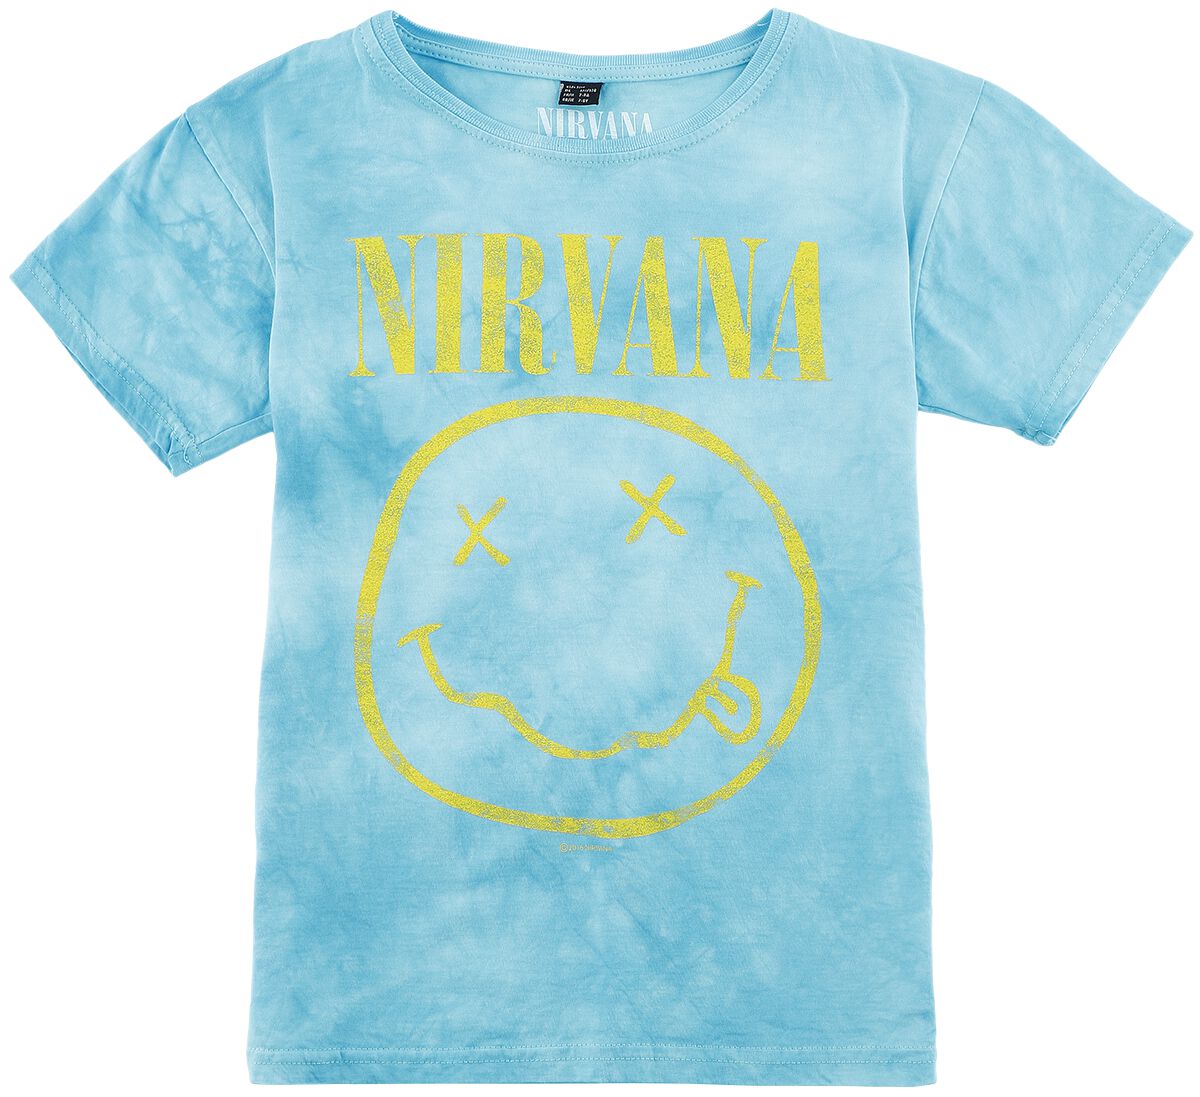 Nirvana T-Shirt für Kinder - Kids - Smiley - für Mädchen & Jungen - hellblau  - Lizenziertes Merchandise!